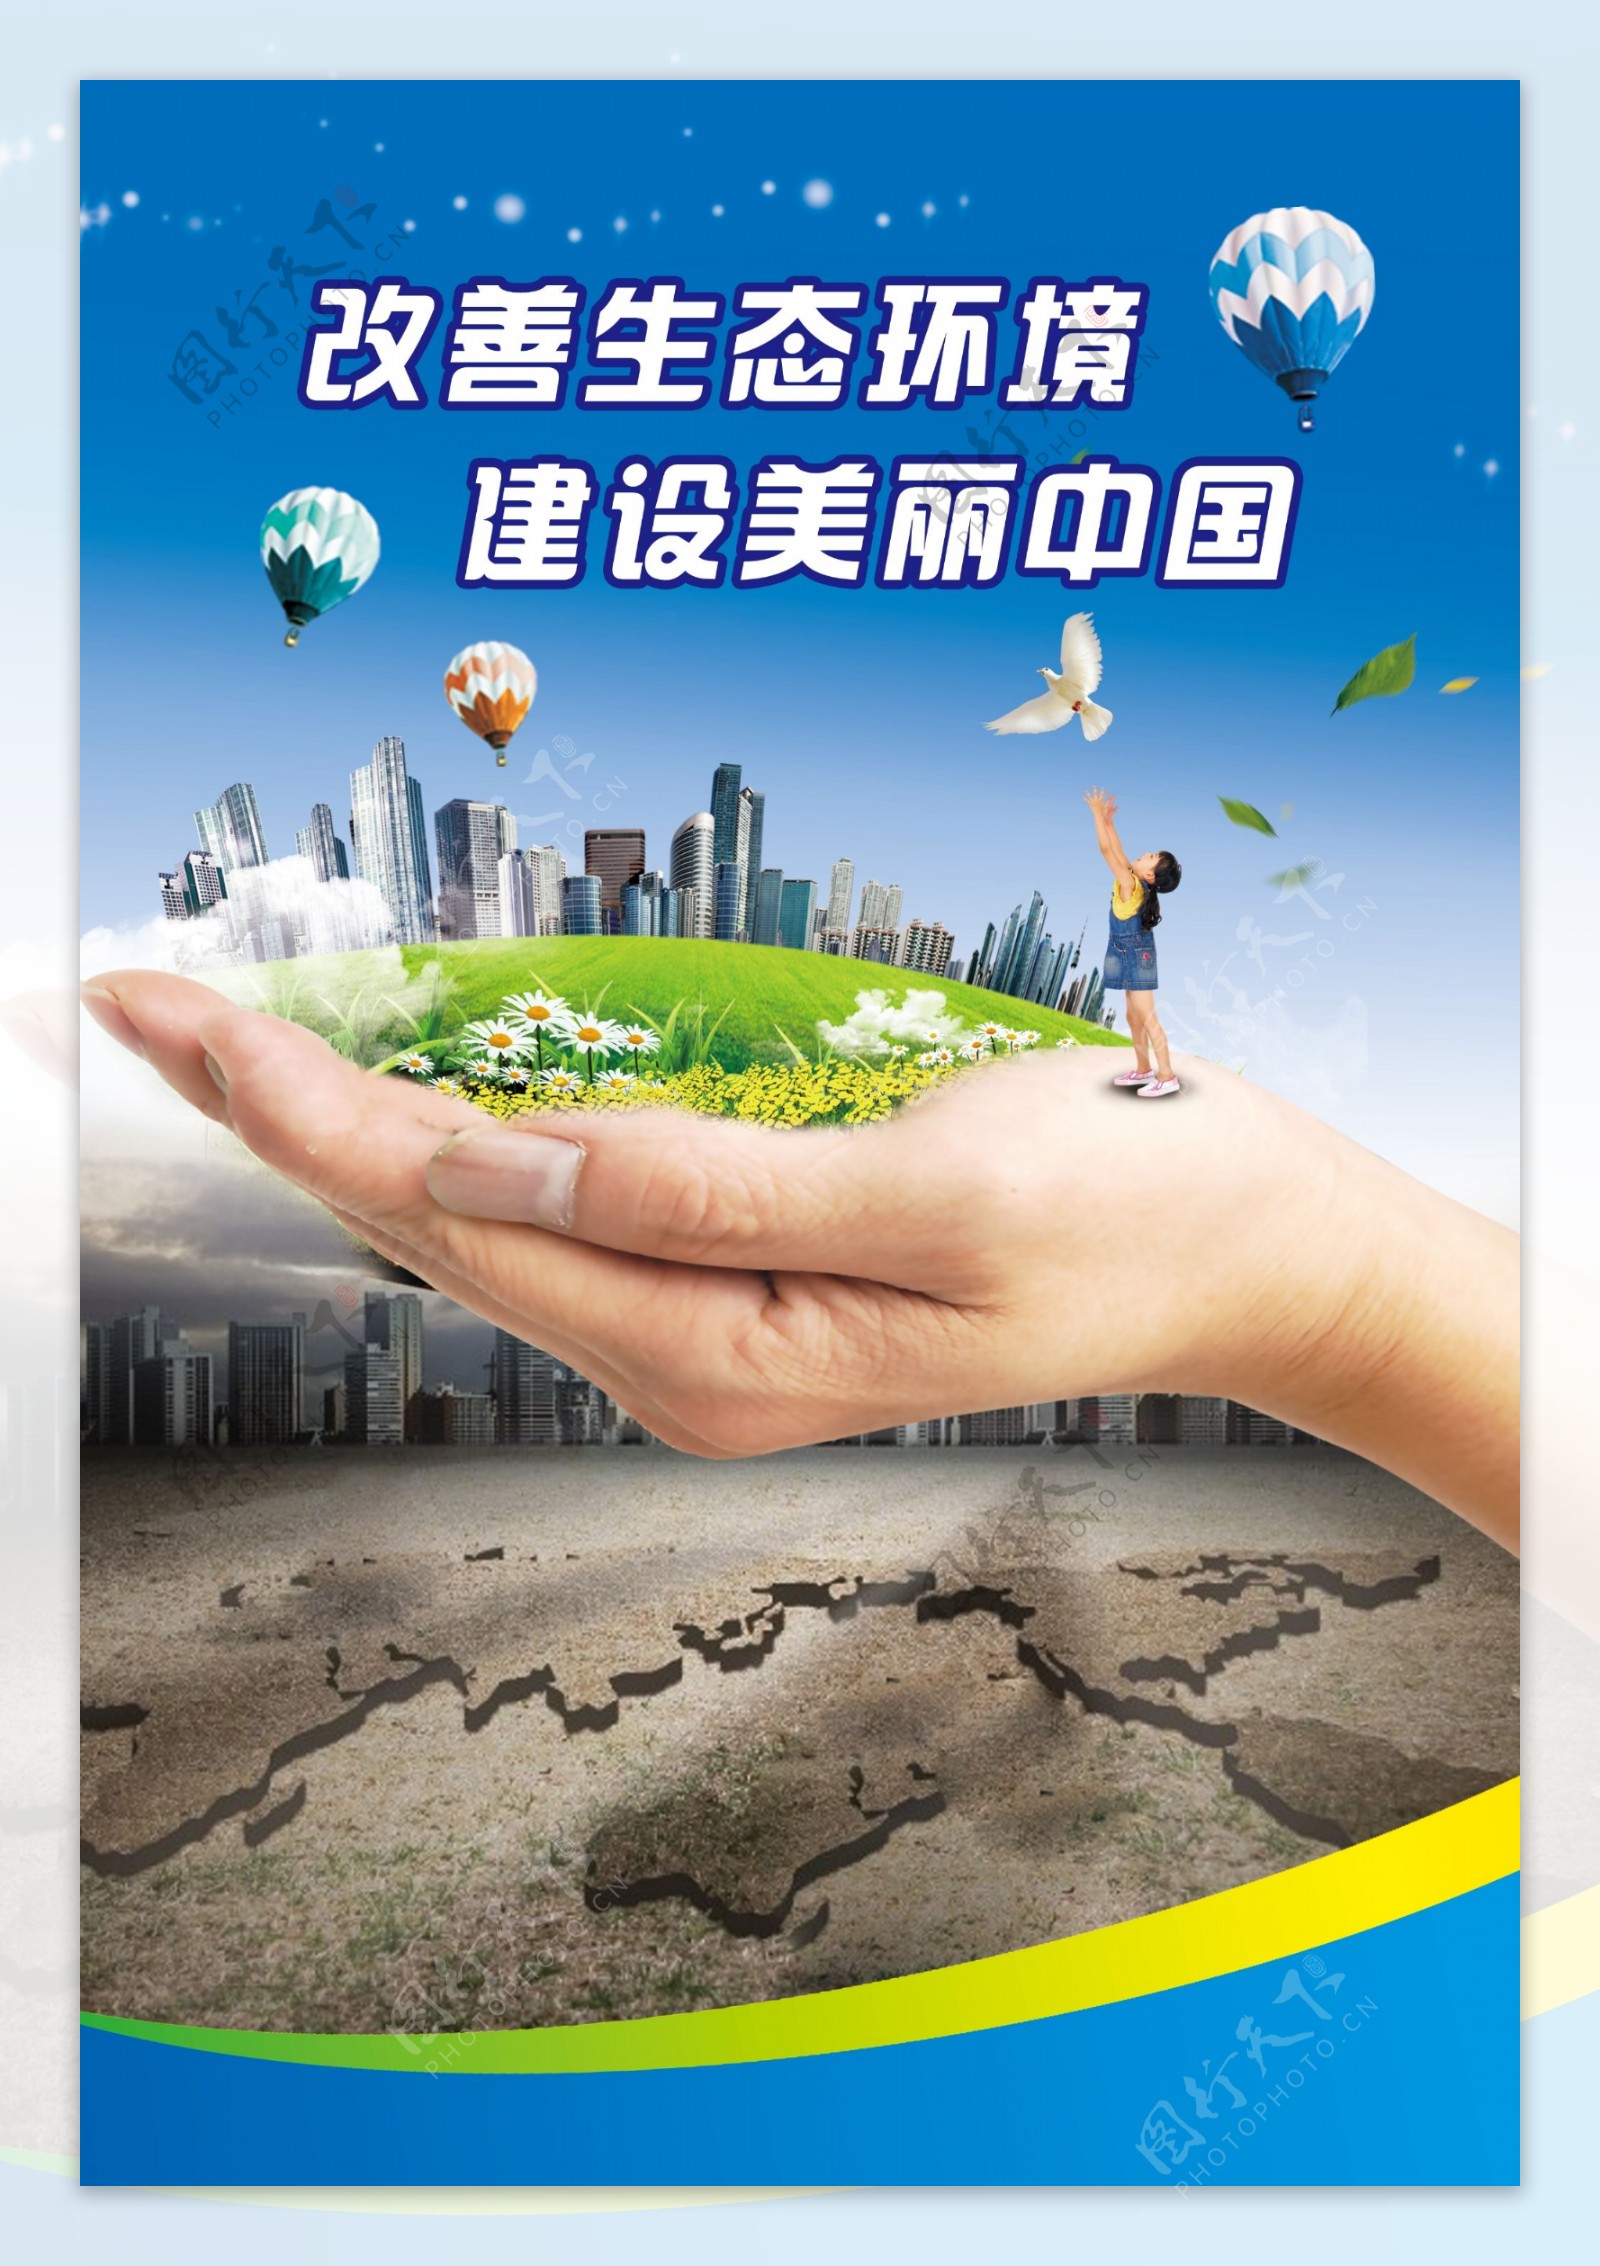 改善生态环境建设美丽中国